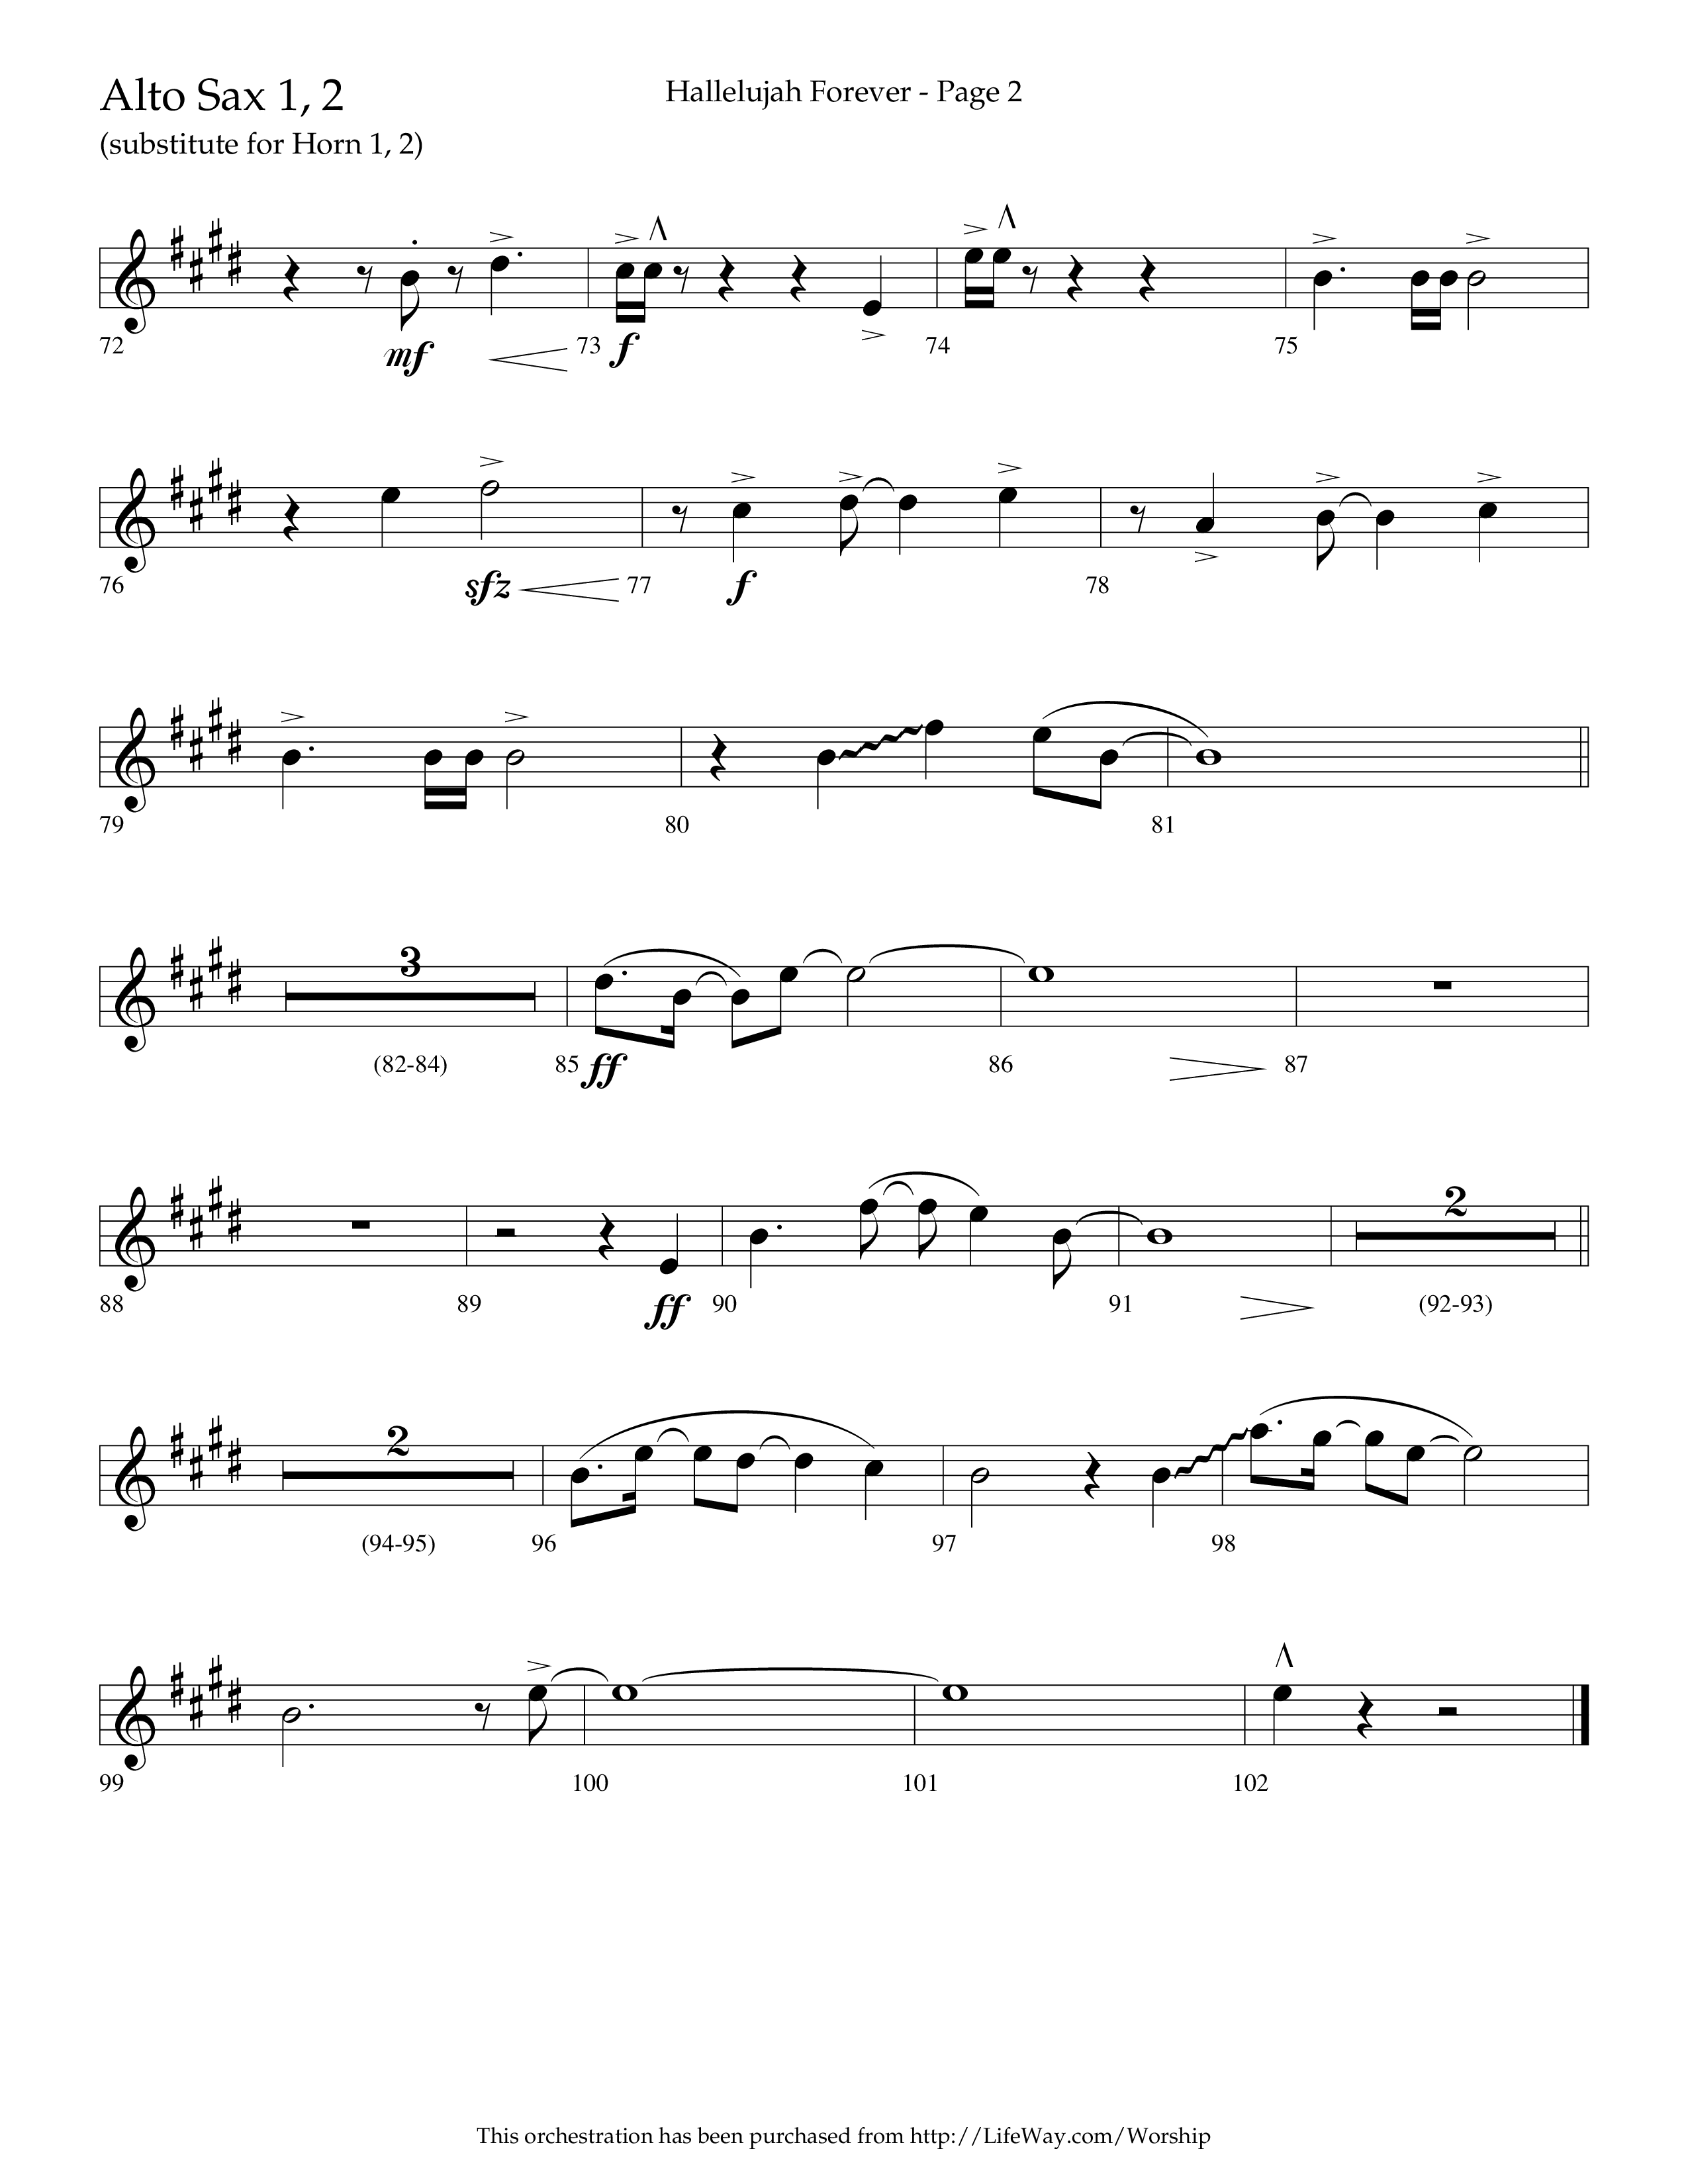 Hallelujah Forever (Choral Anthem SATB) Alto Sax 1/2 (Lifeway Choral / Arr. Cliff Duren)